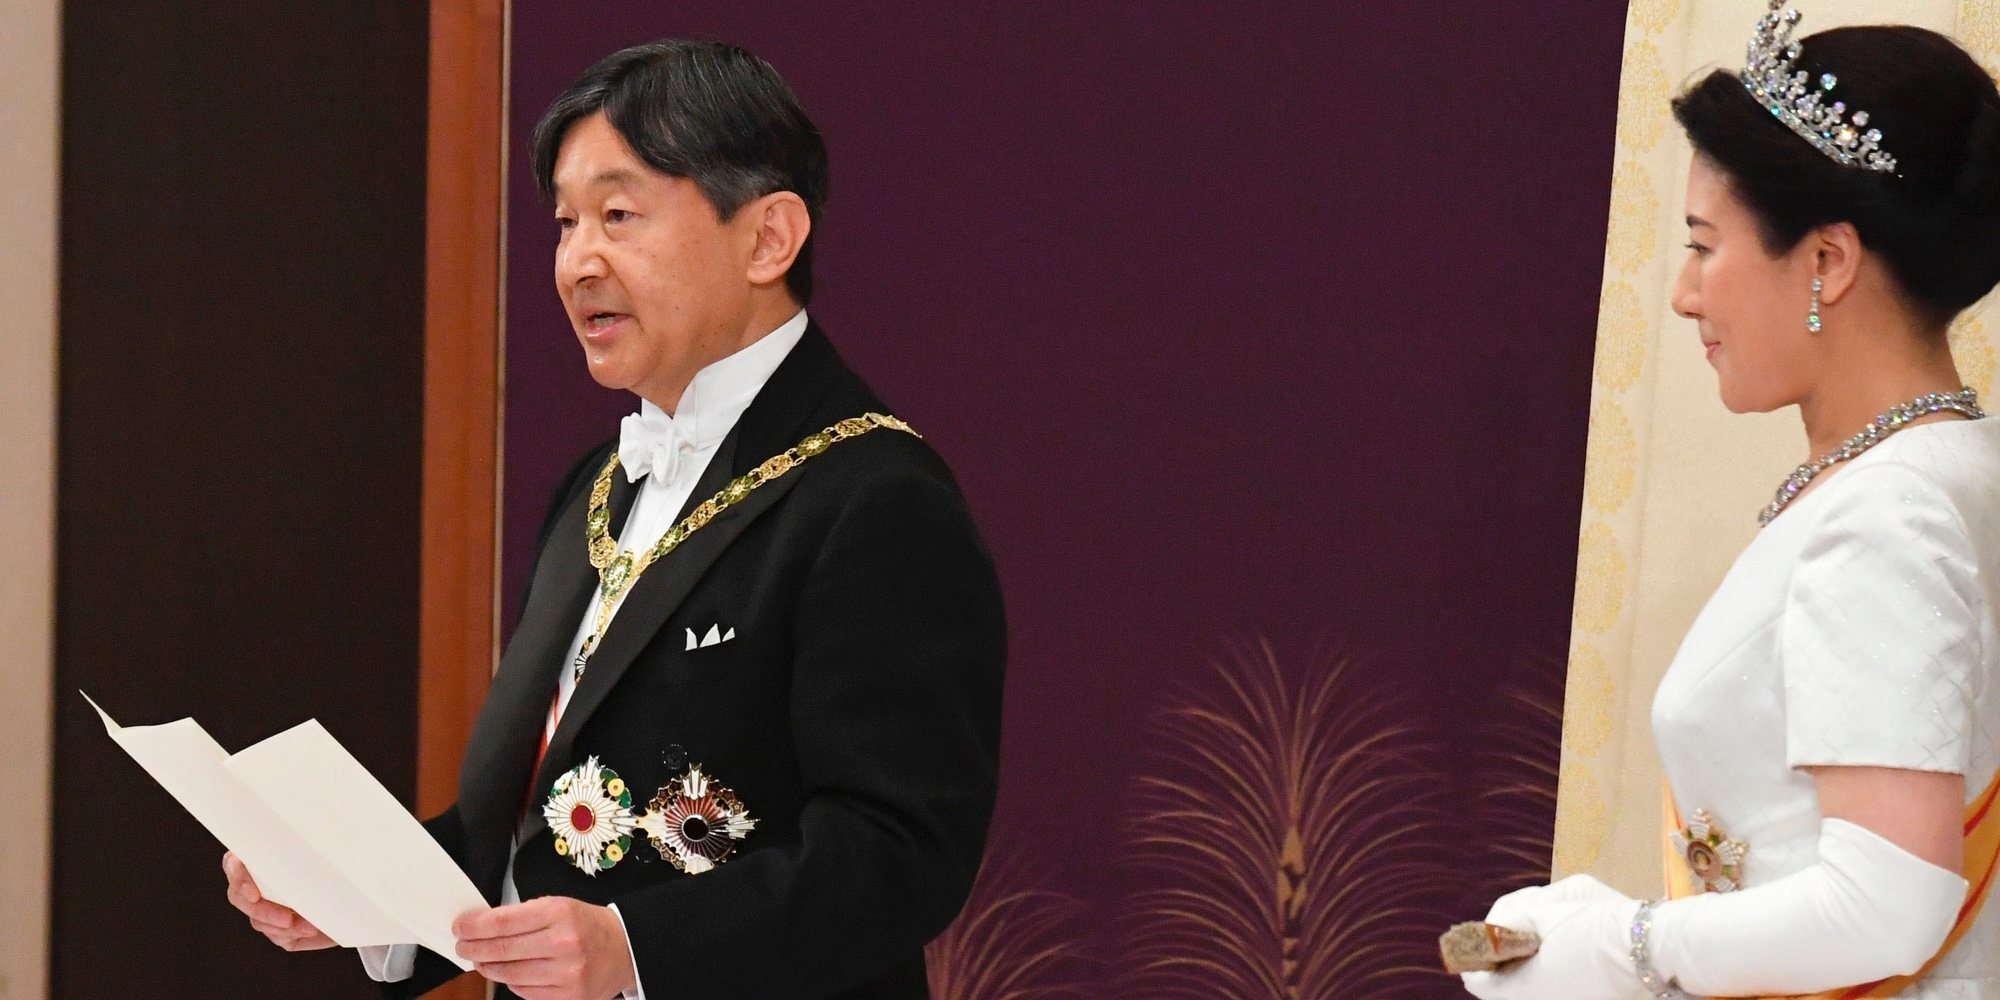 Naruhito de Japón se convierte en el nuevo Emperador acompañado por la Emperatriz Masako